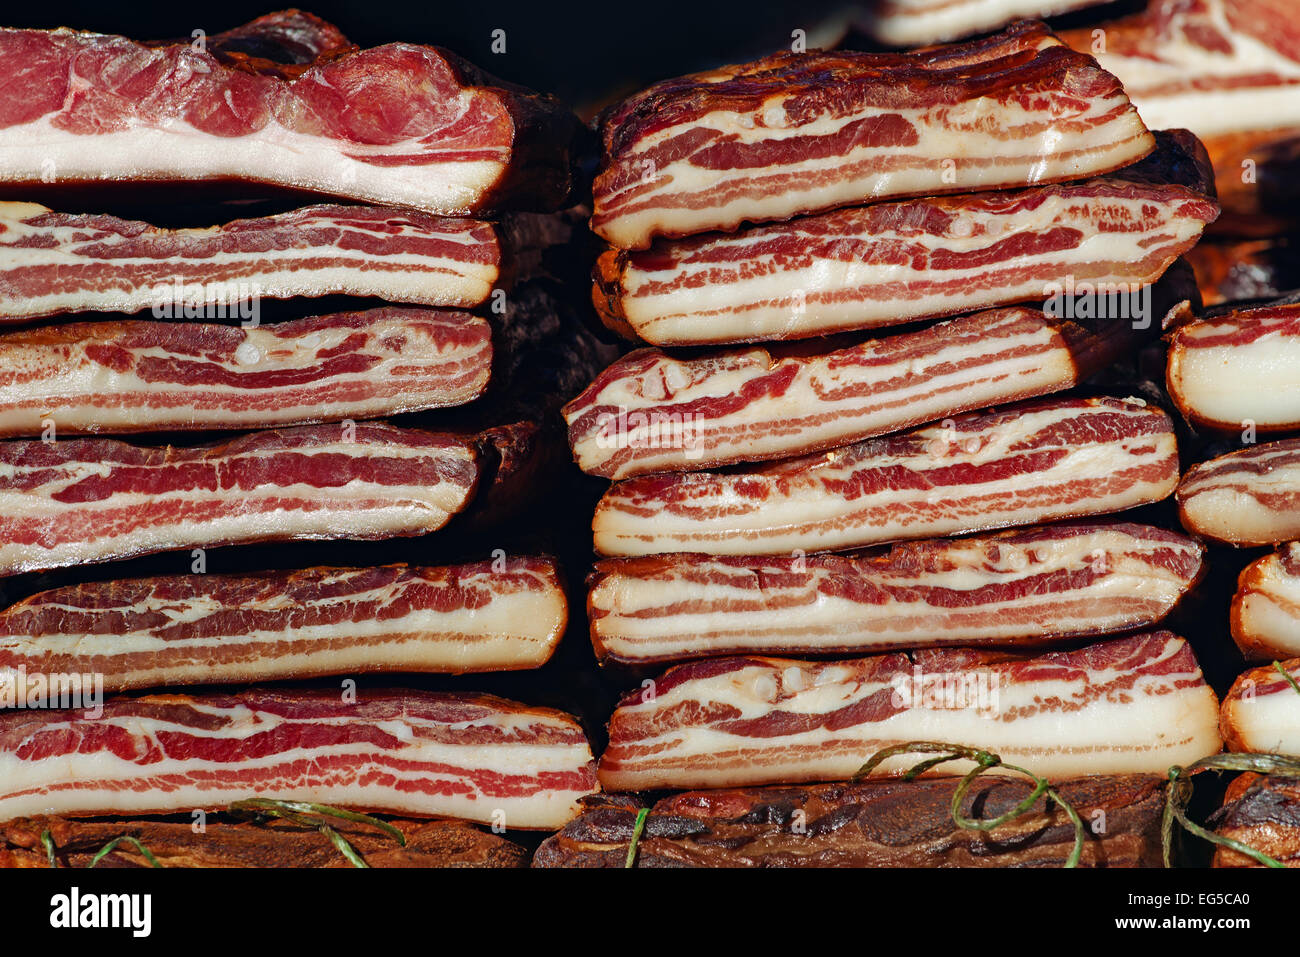 Pile de Bacon fumé, de la viande de porc en conserve et est considéré comme un mets de la nourriture dans certaines cultures. Banque D'Images